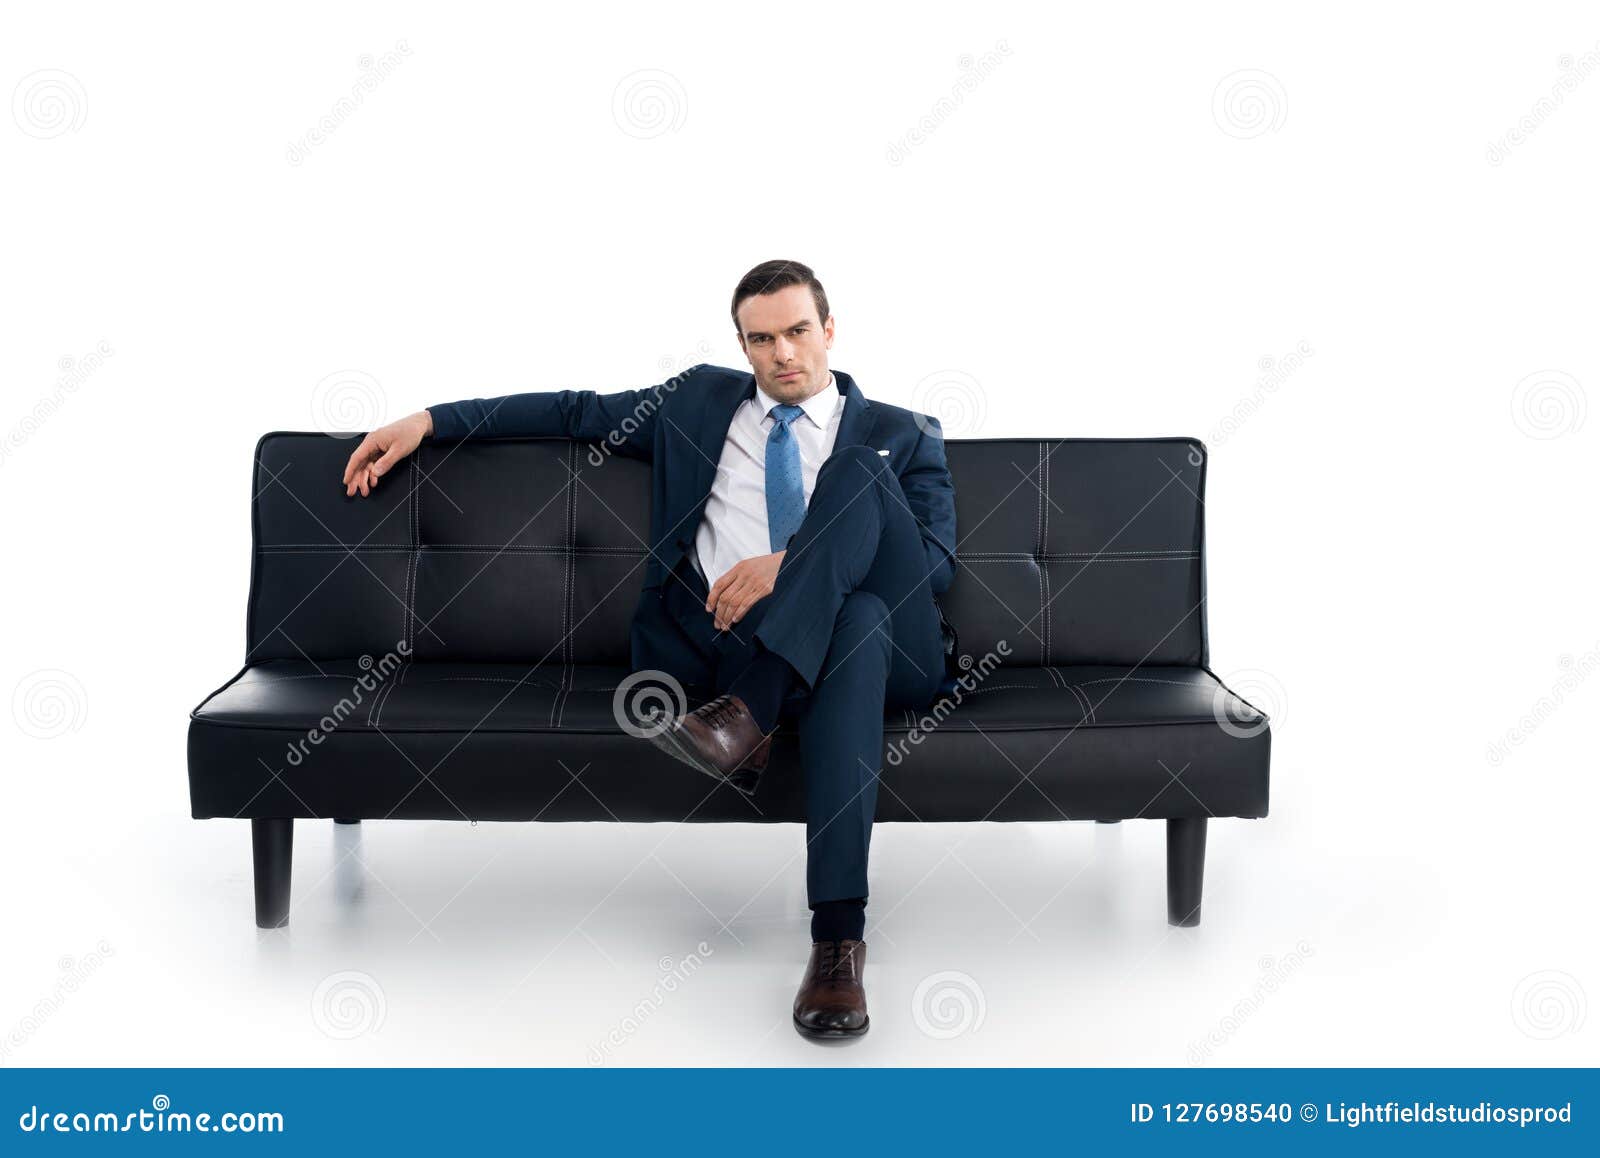 Мужчина сидит расставив ноги. Человек сидит на диване. Мужчина на диване фотосессия. Человек облокотился на диван. Чел сидит на диване.